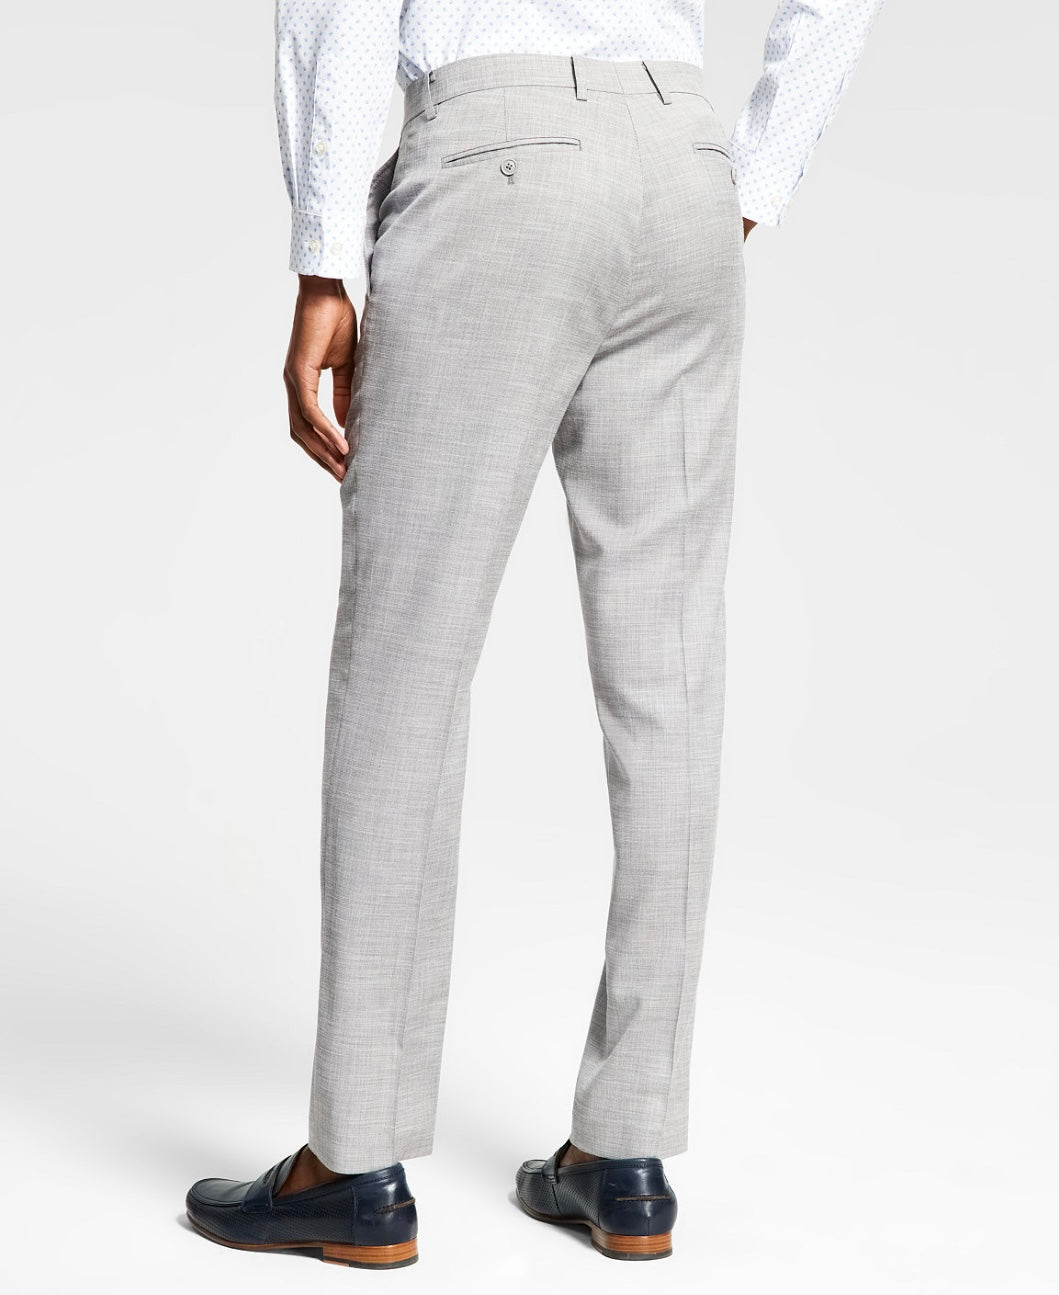 Alfani Men's Slim-Fit Solid Knit Suit Pants Grey Size 36W x 30L